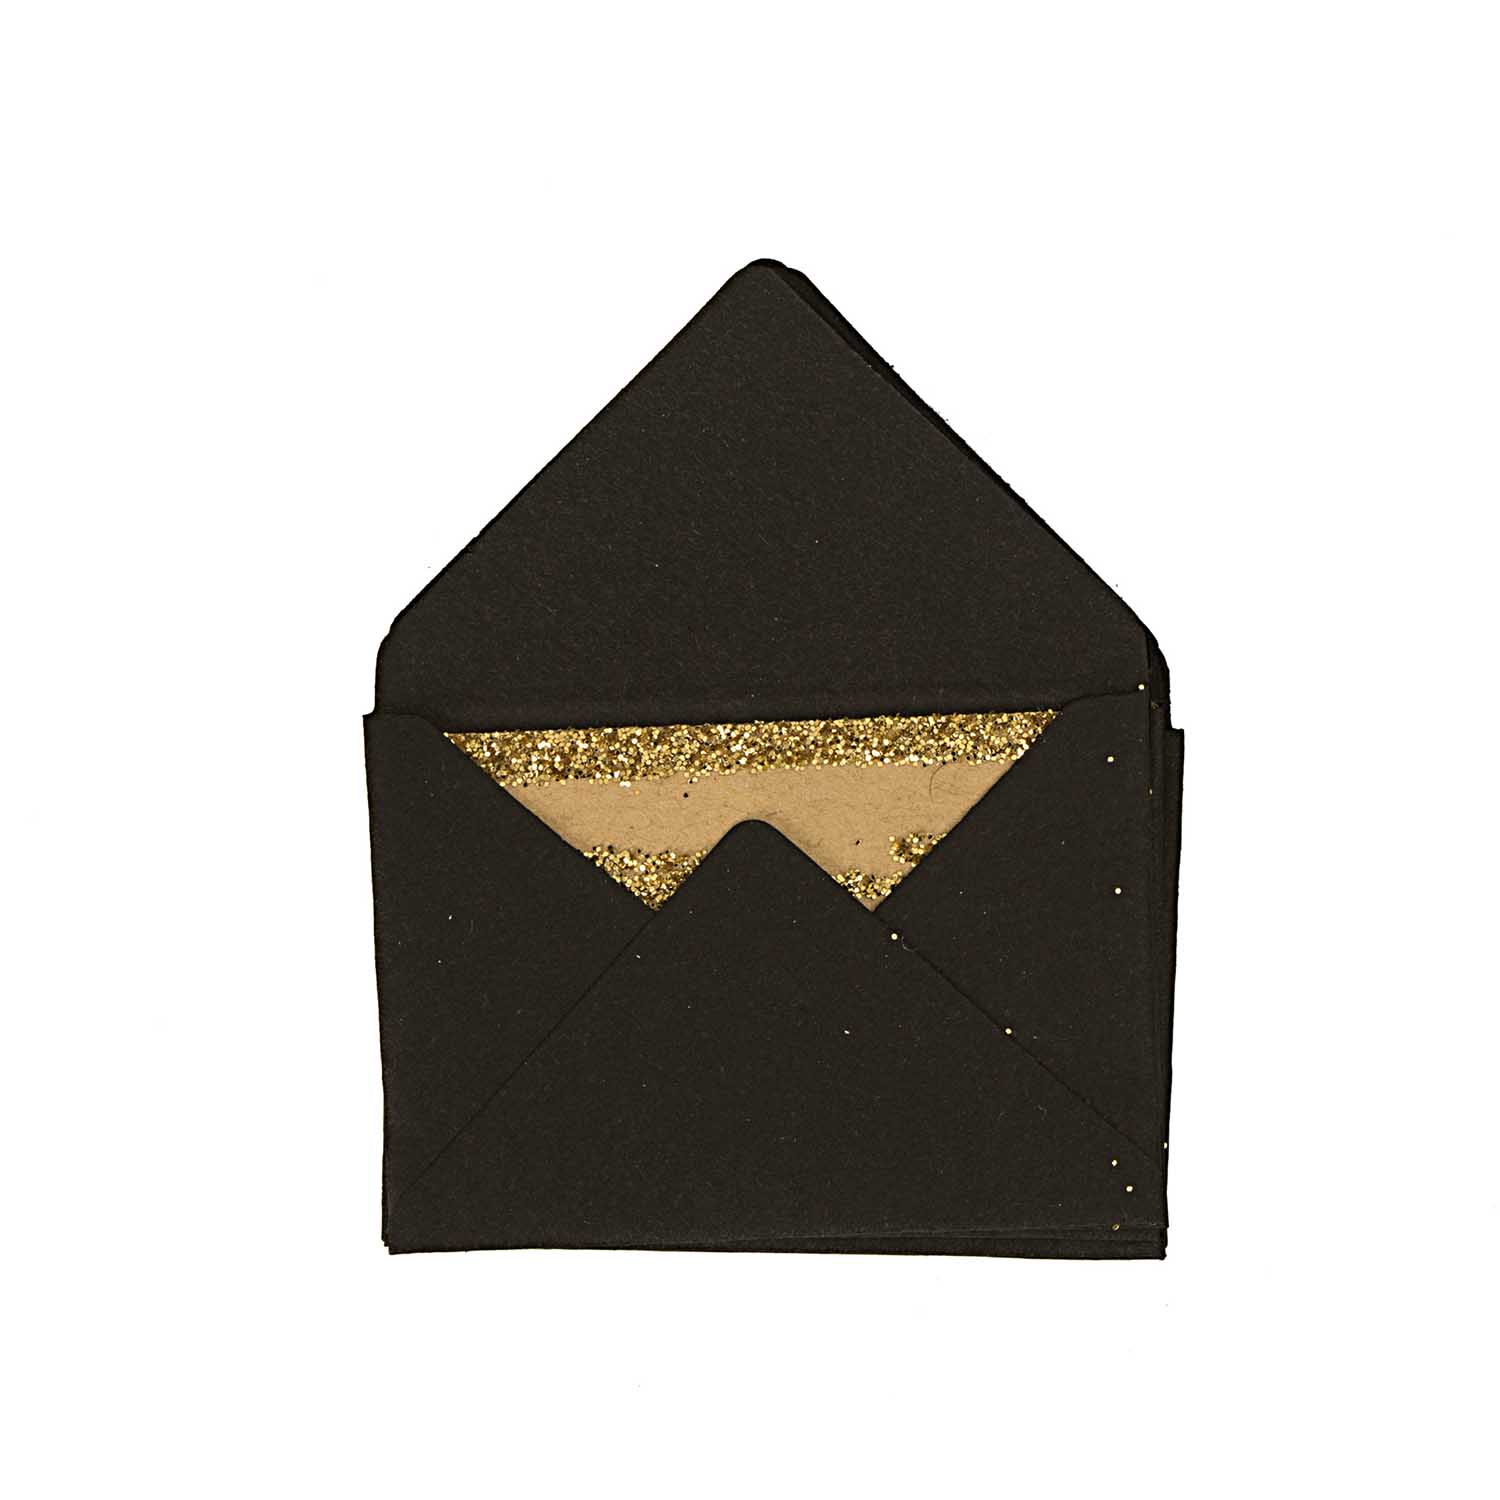 NEU Mini Briefumschläge & Karten, 3 x 4,5 cm, 10 Stück, Schwarz - Glitter Gold